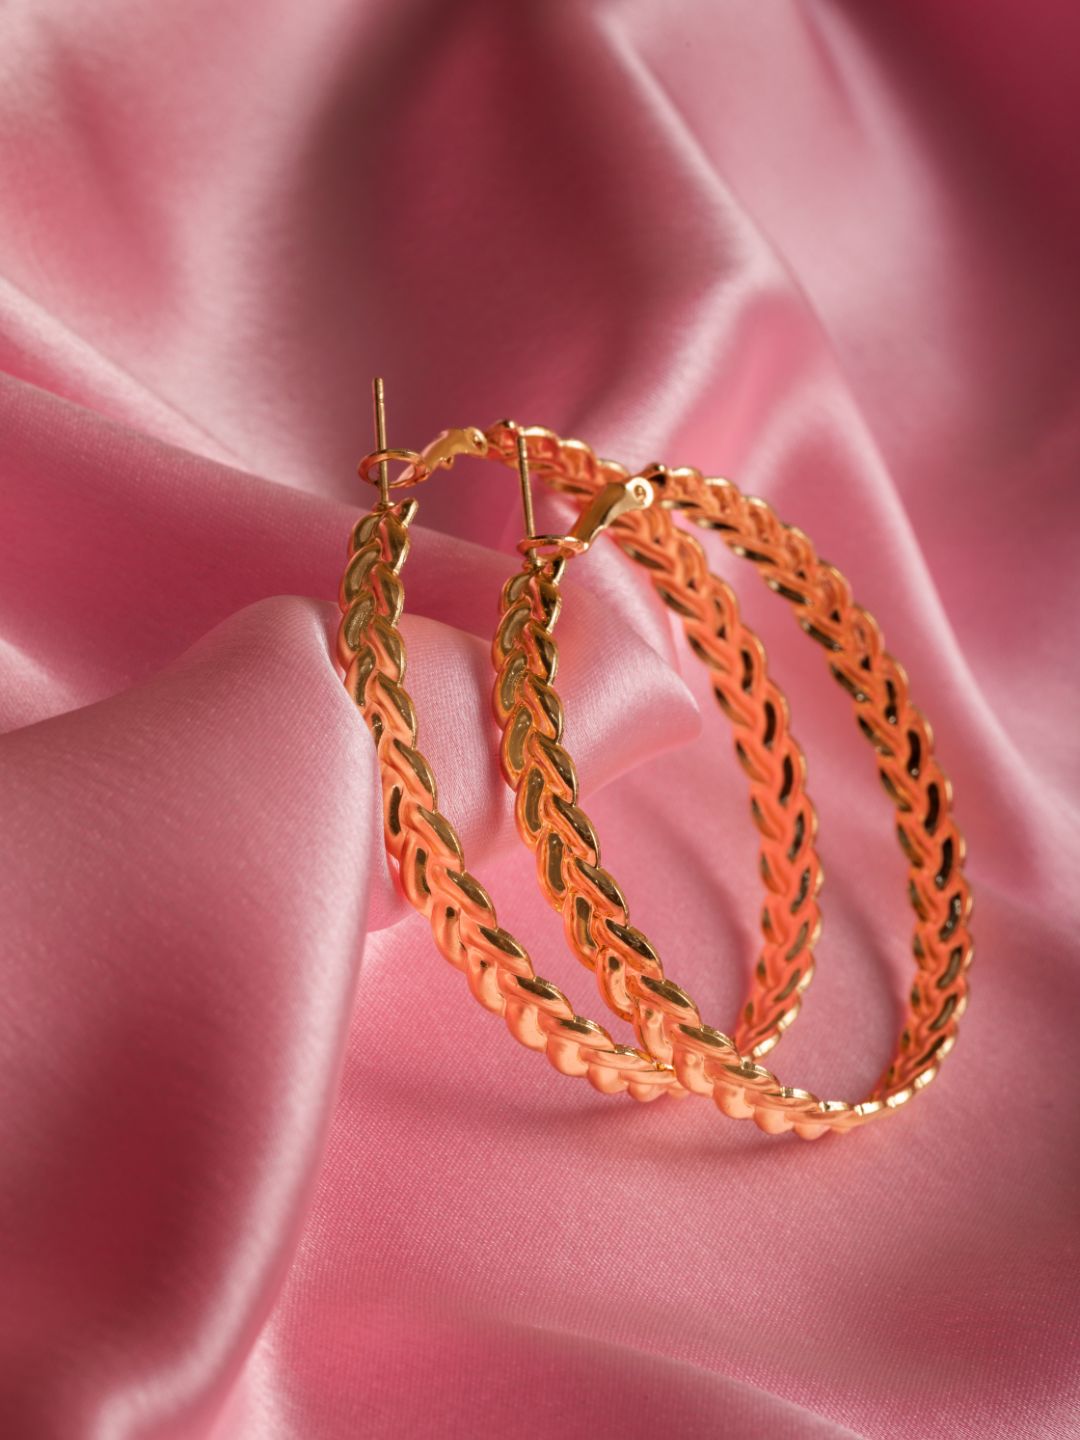 Elegant Textured Gold-Plated Hoop Earrings